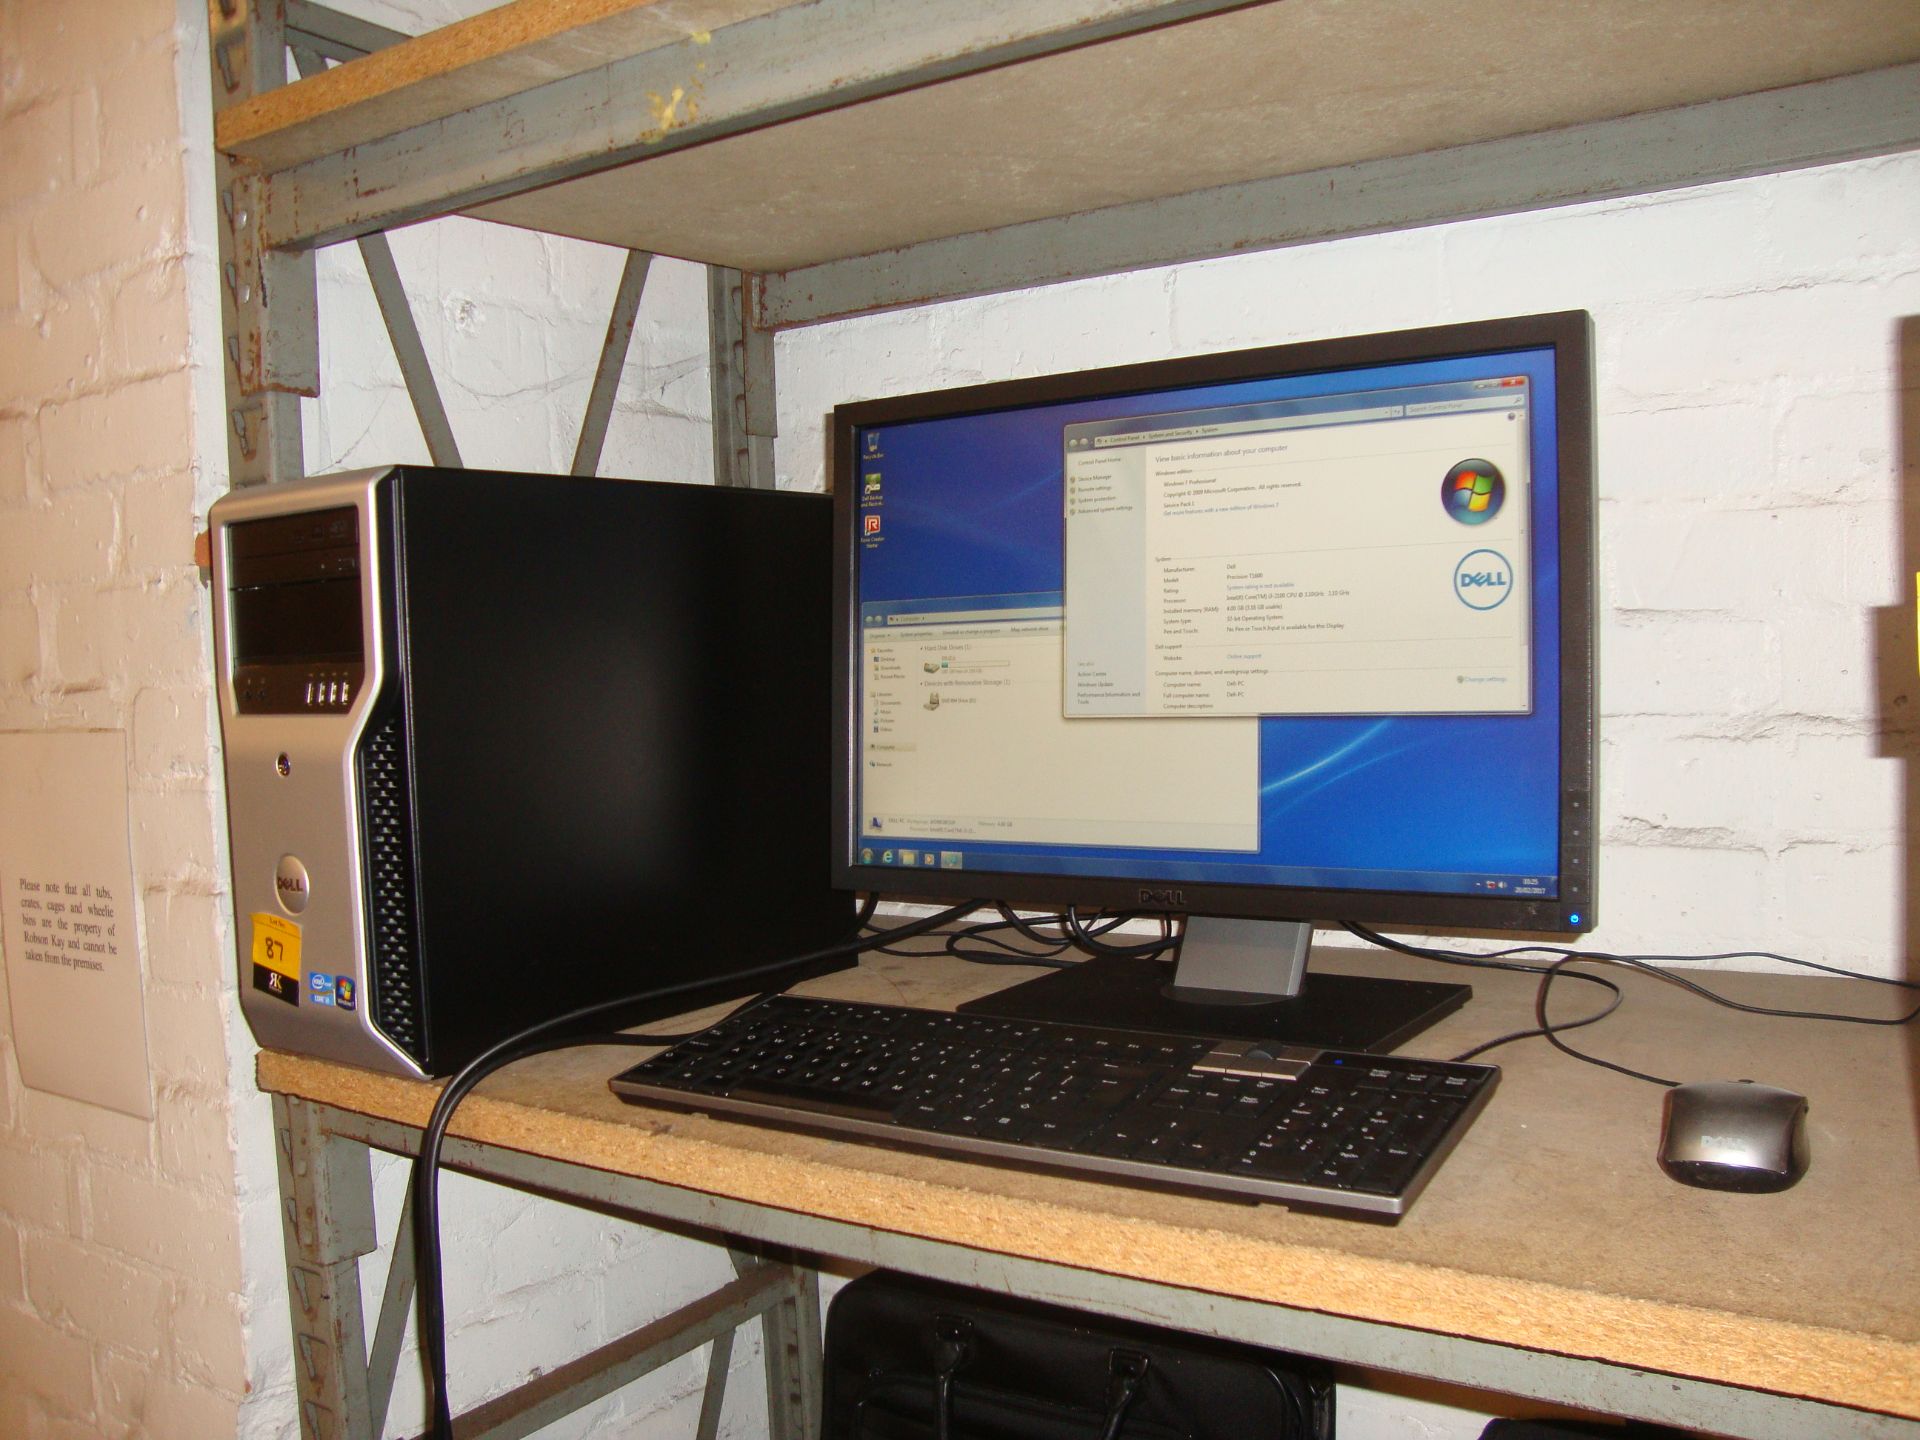 Dell Precision T1600 desktop Core i3 computer with Windows 7 including Dell widescreen LCD monitor